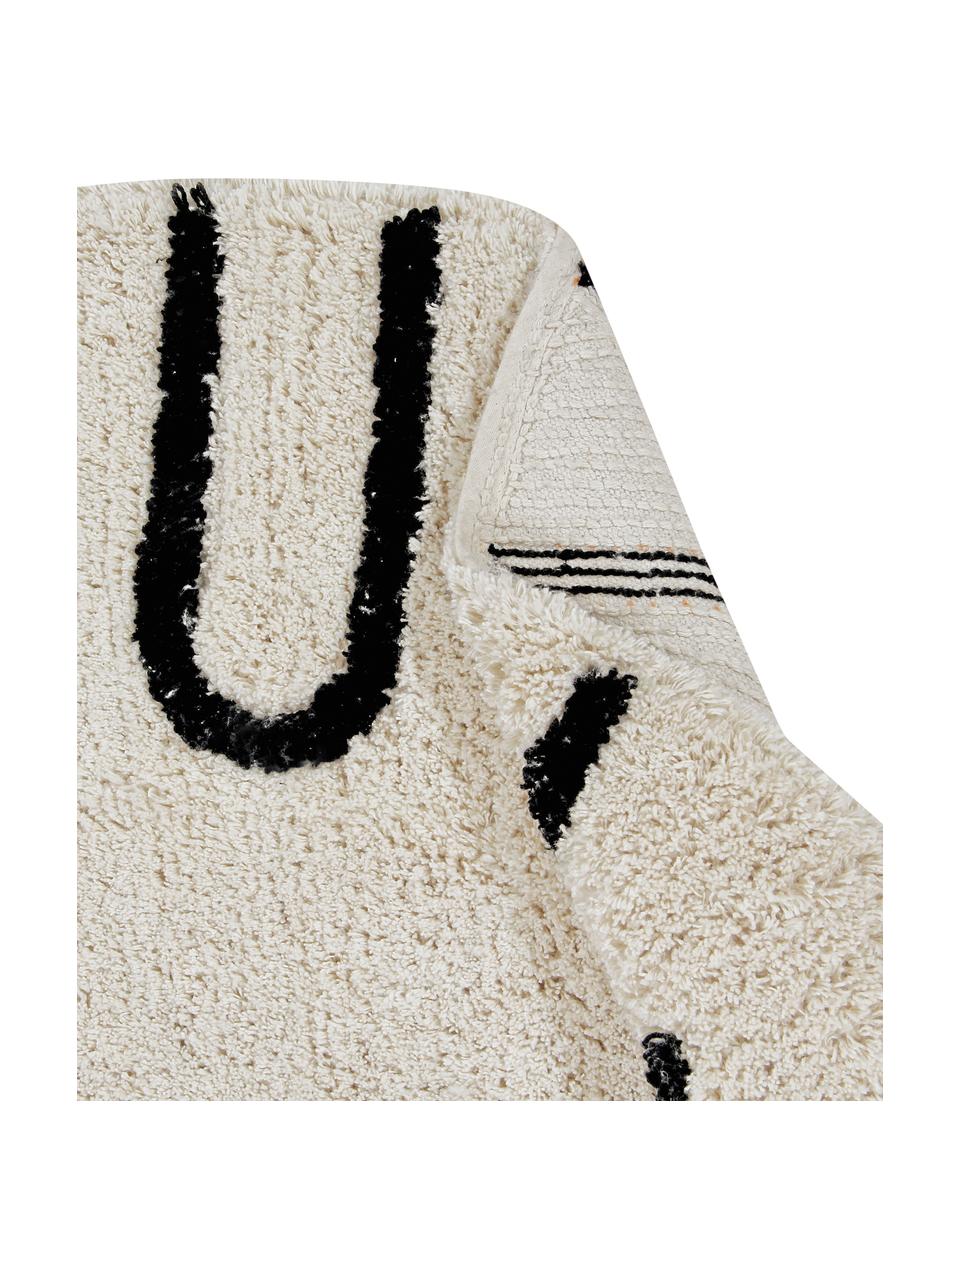 Runder Teppich ABC mit Buchstaben Design, waschbar, Recycelte Baumwolle (80% Baumwolle, 20% andere Fasern), Beige, Schwarz, Ø 150 cm (Größe M)